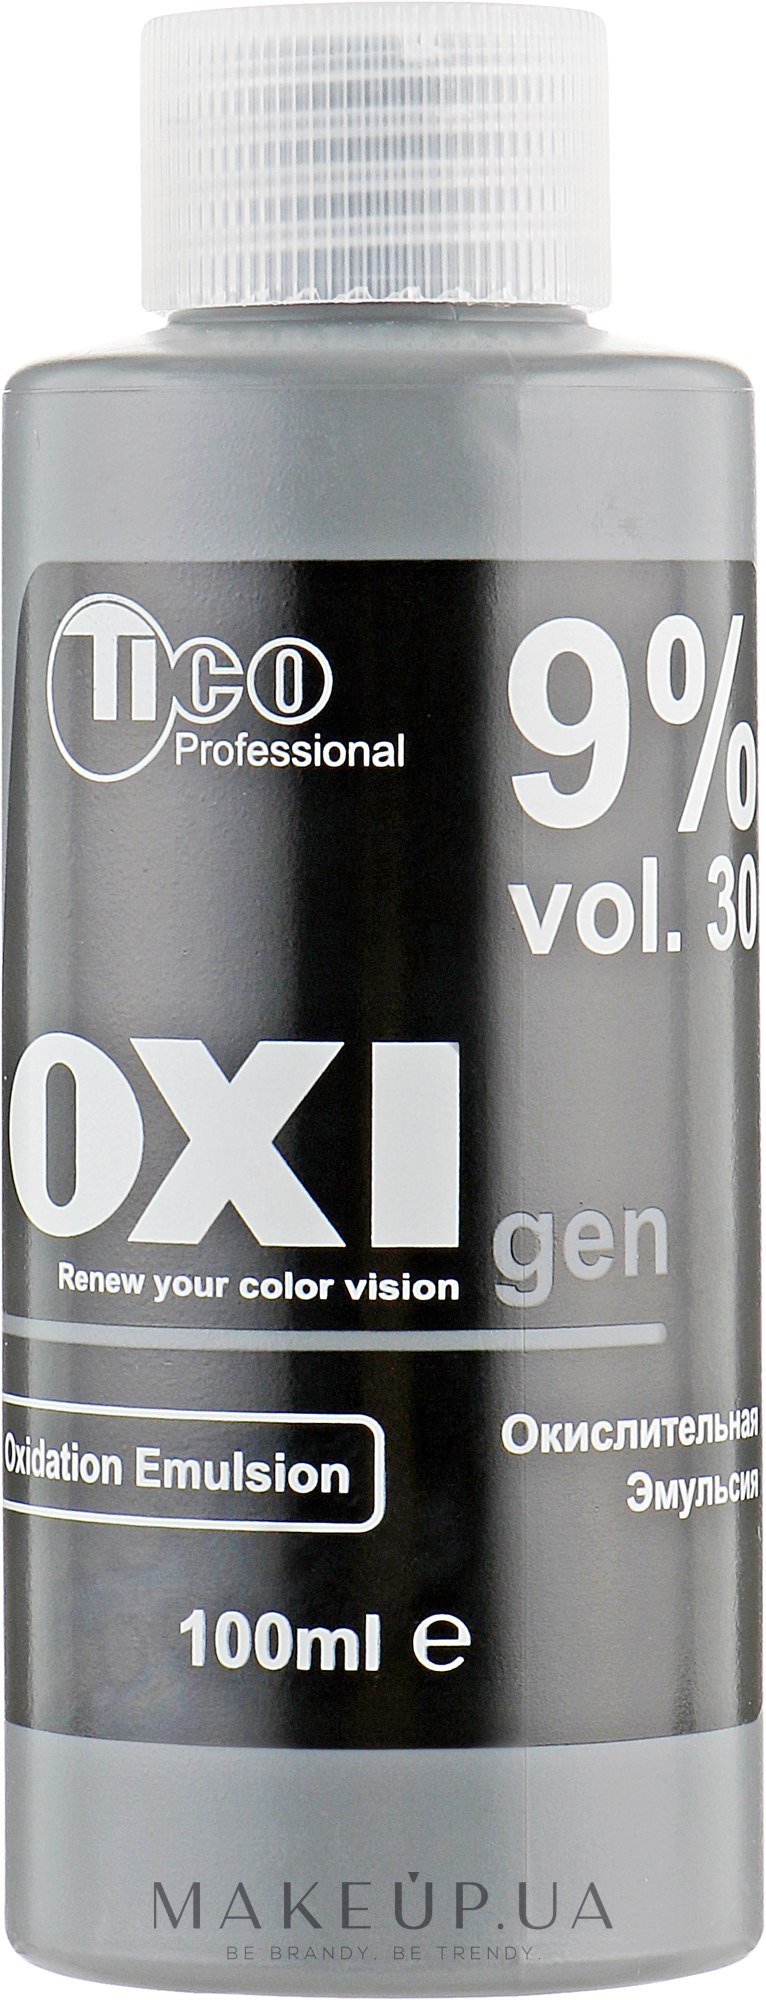 Окислительная эмульсия для интенсивной крем-краски Ticolor Classic 9% - Tico Professional Ticolor Classic OXIgen  — фото 100ml